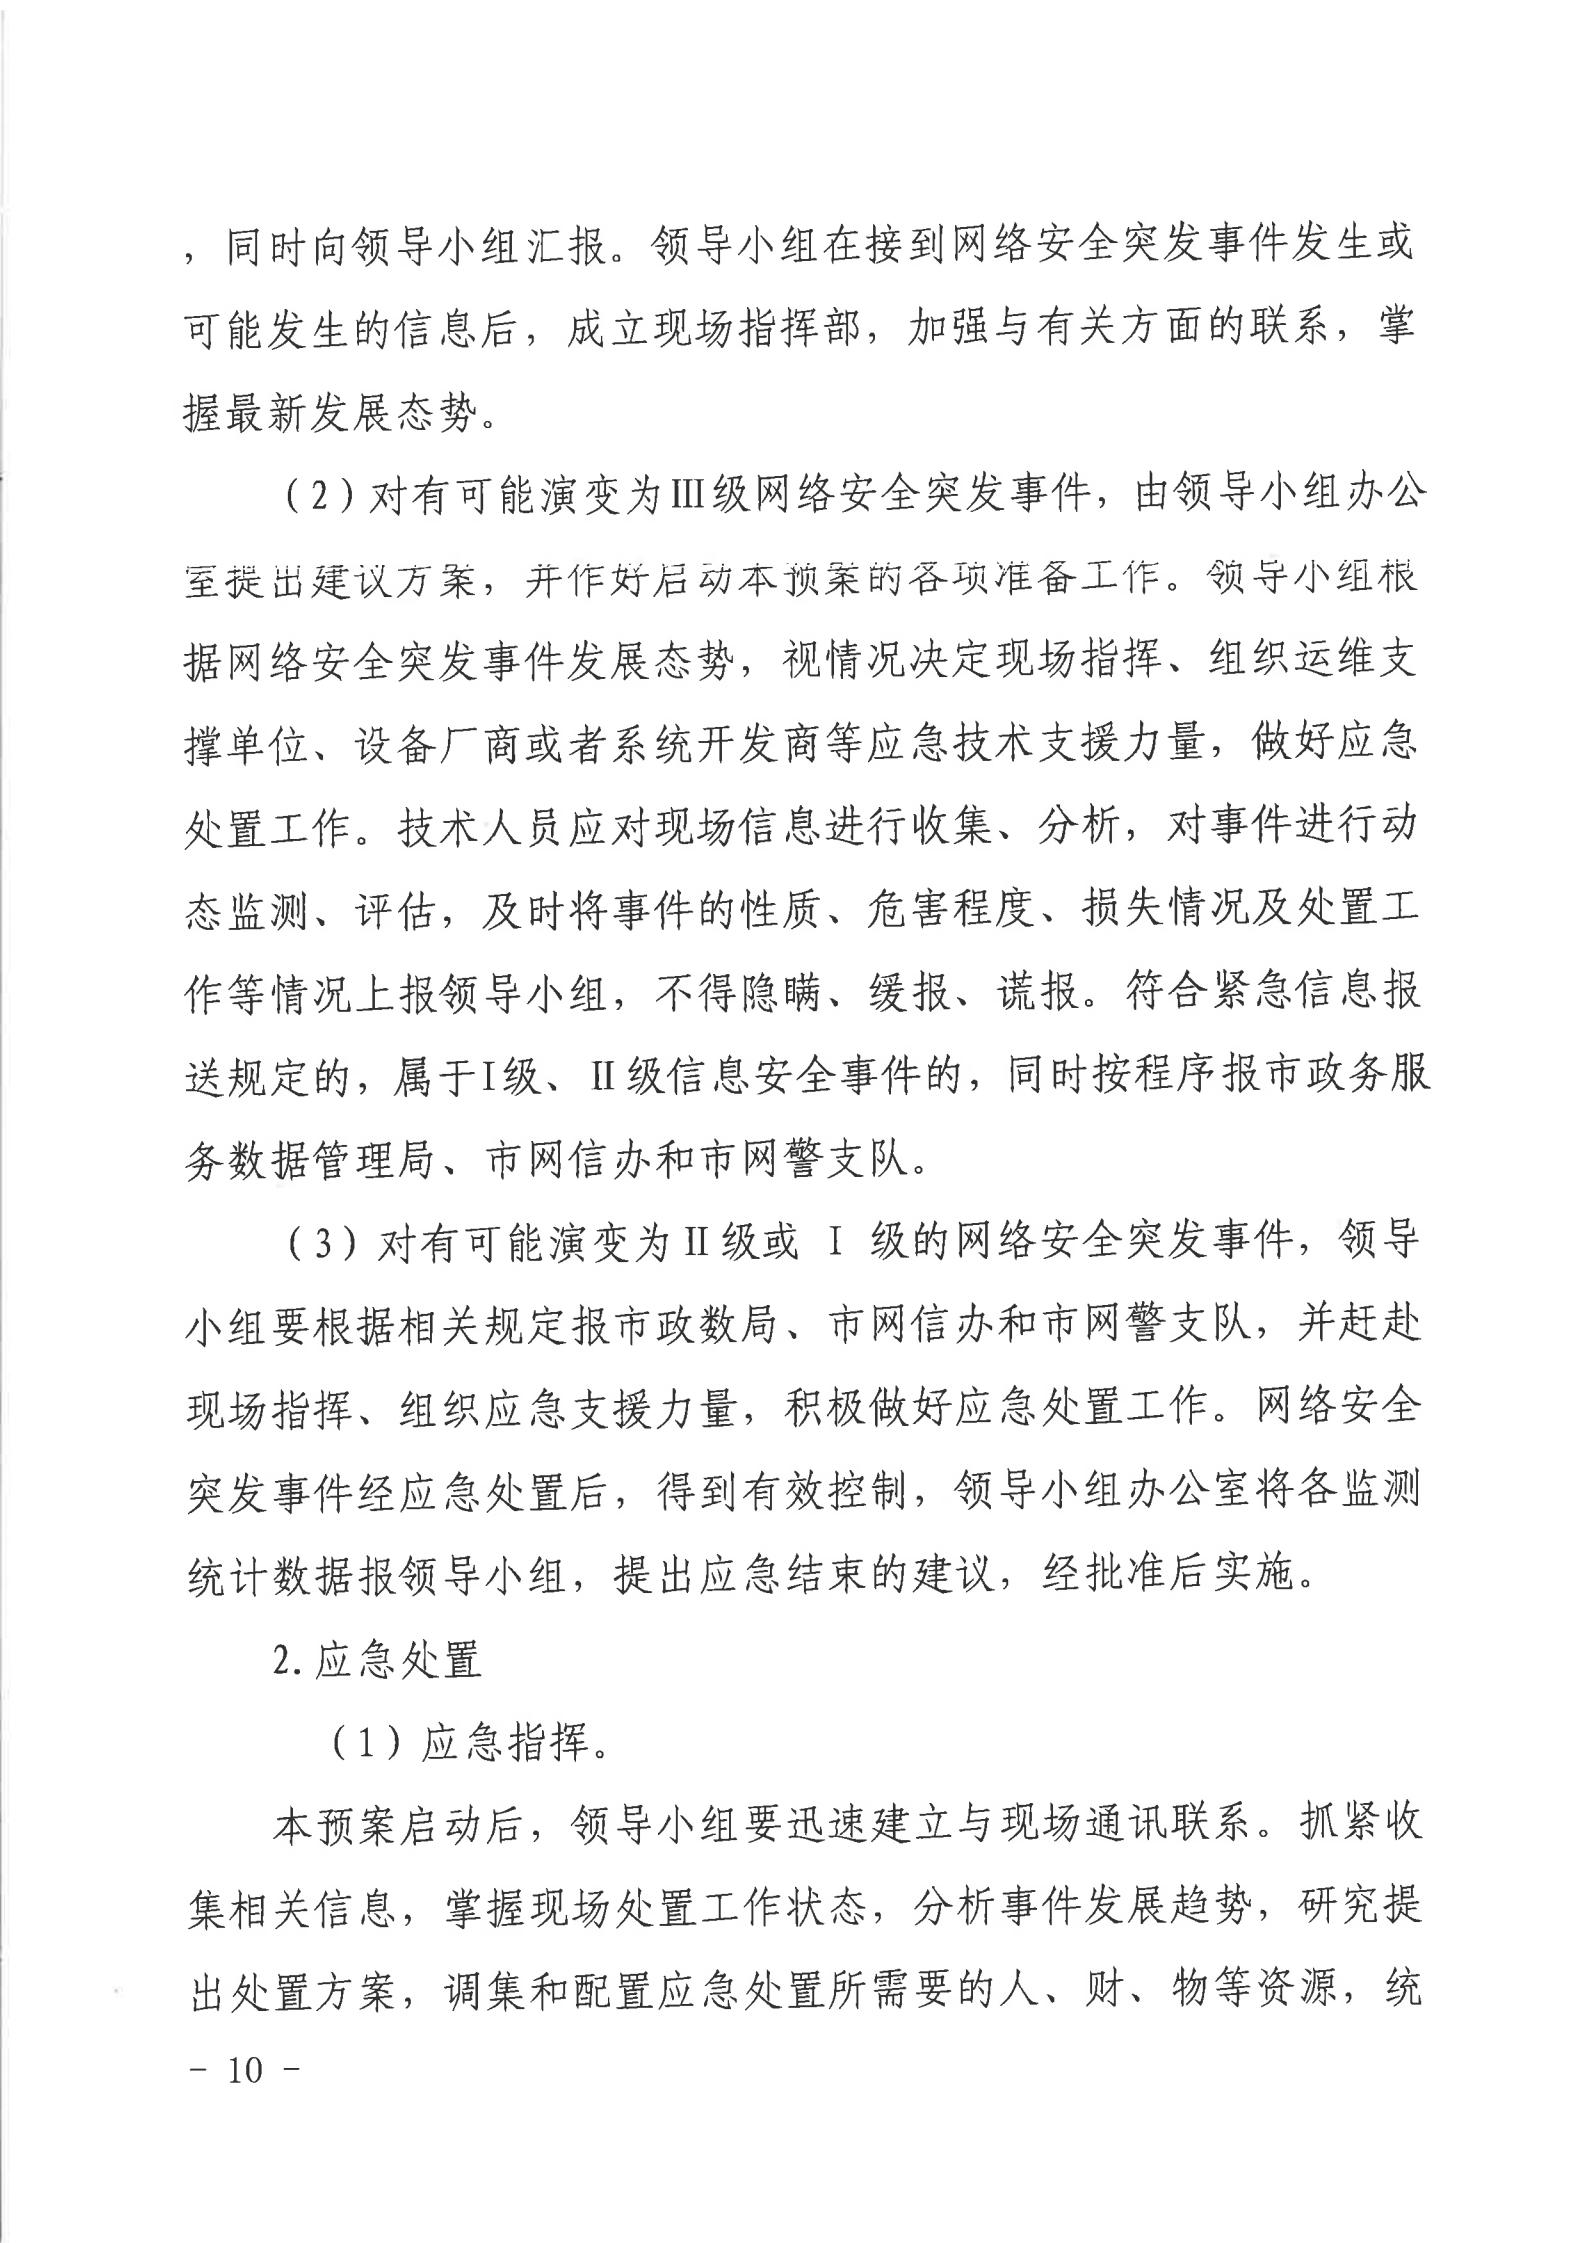 湛江市人民政府行政服务中心网络安全应急预案_09.jpg